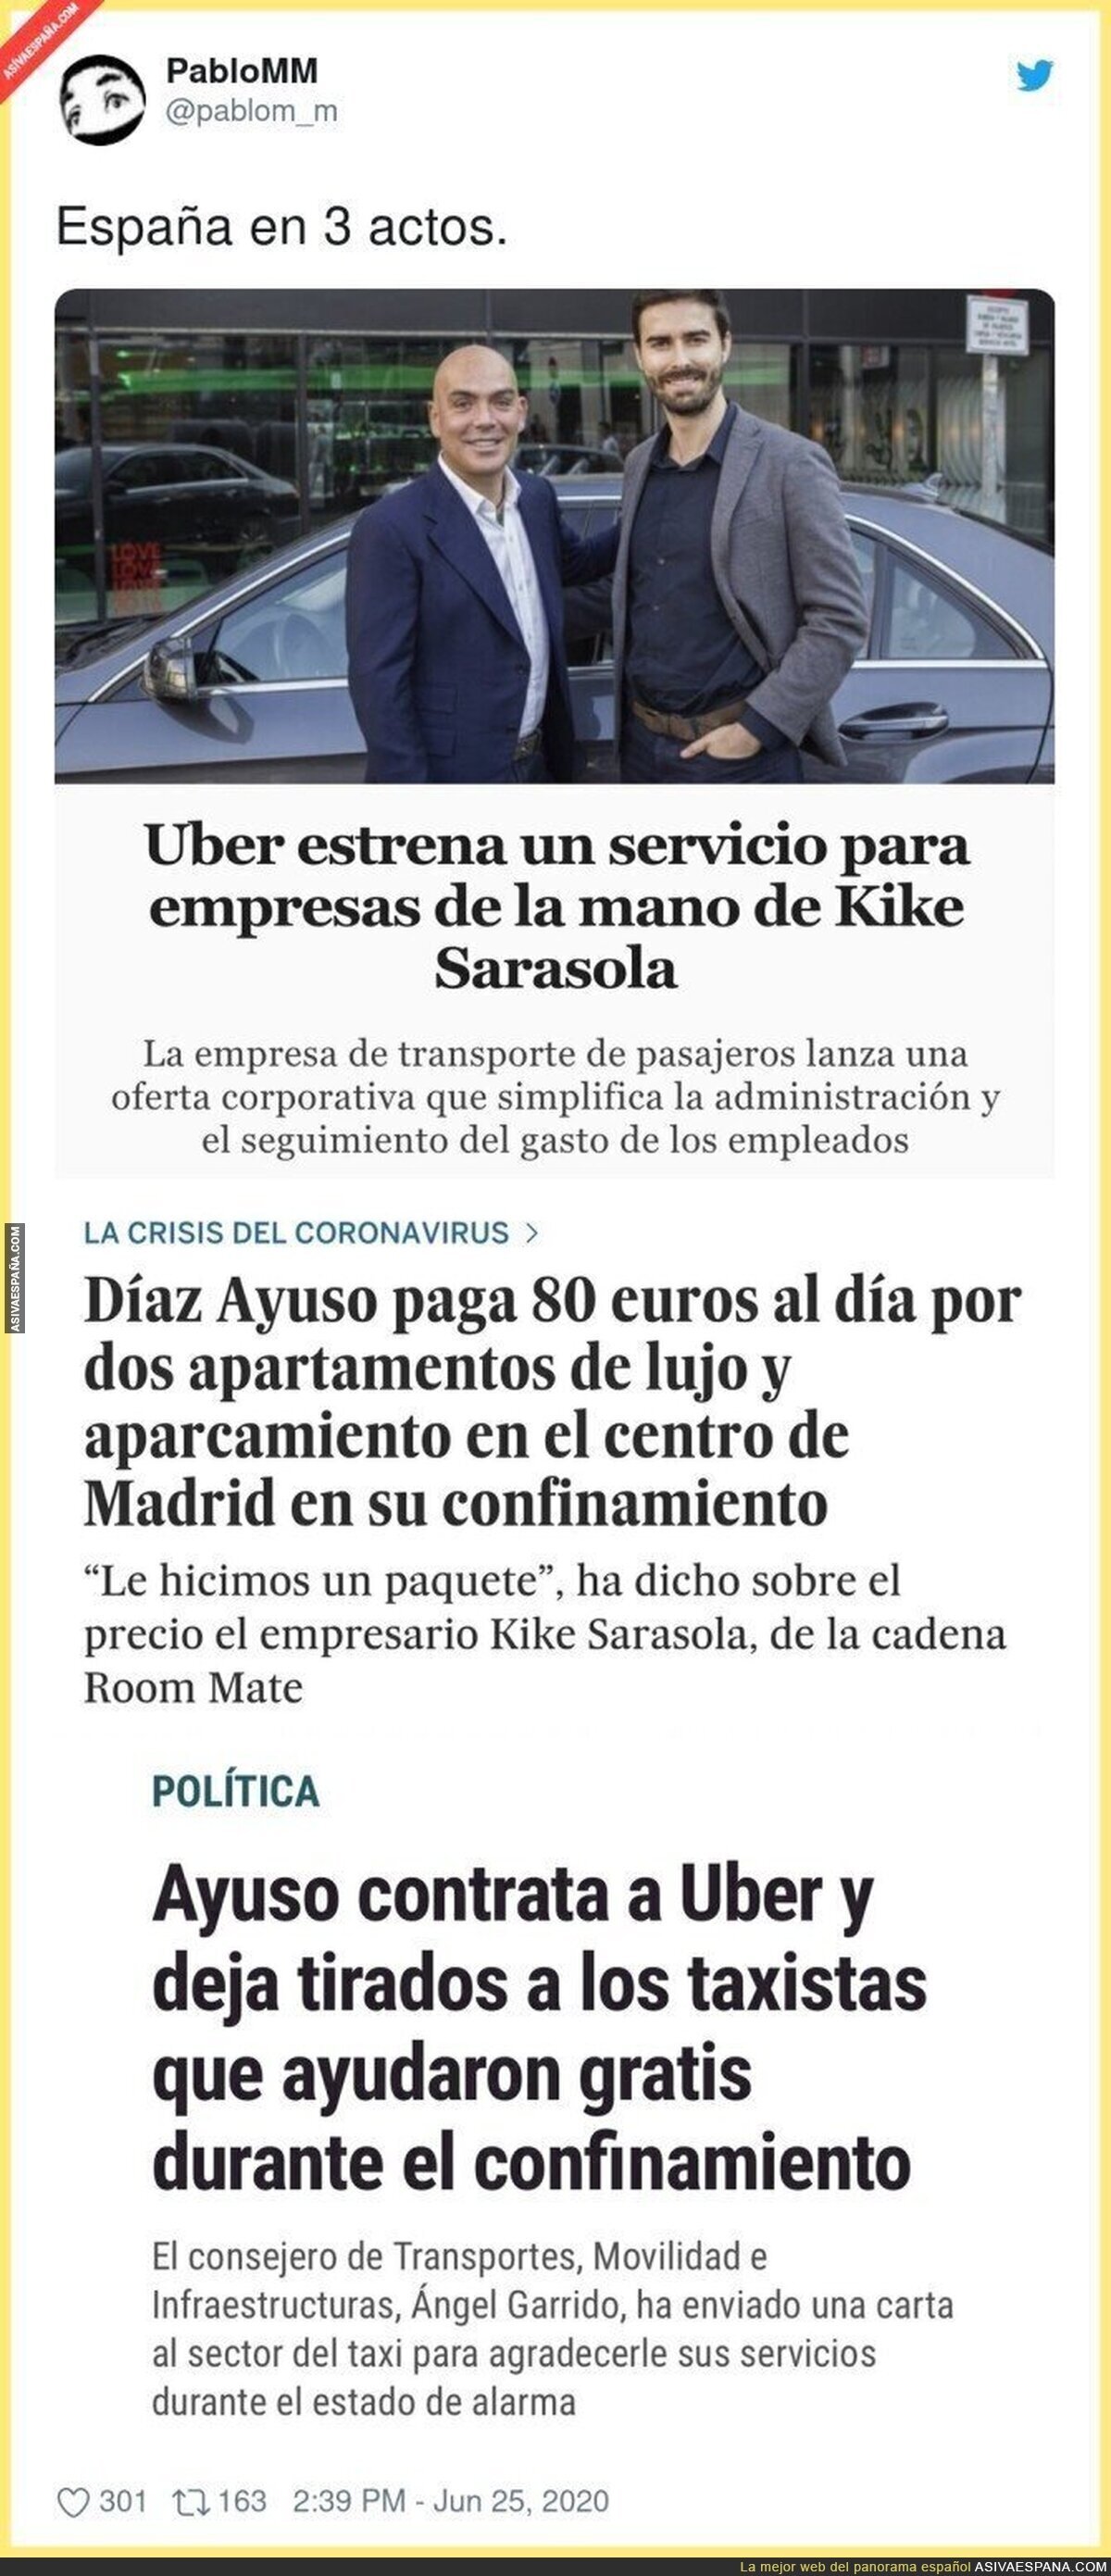 Los favores se pagan y estas tres noticias de Kike Sarasola, Uber e Isabel Díaz Ayuso lo dejan claro